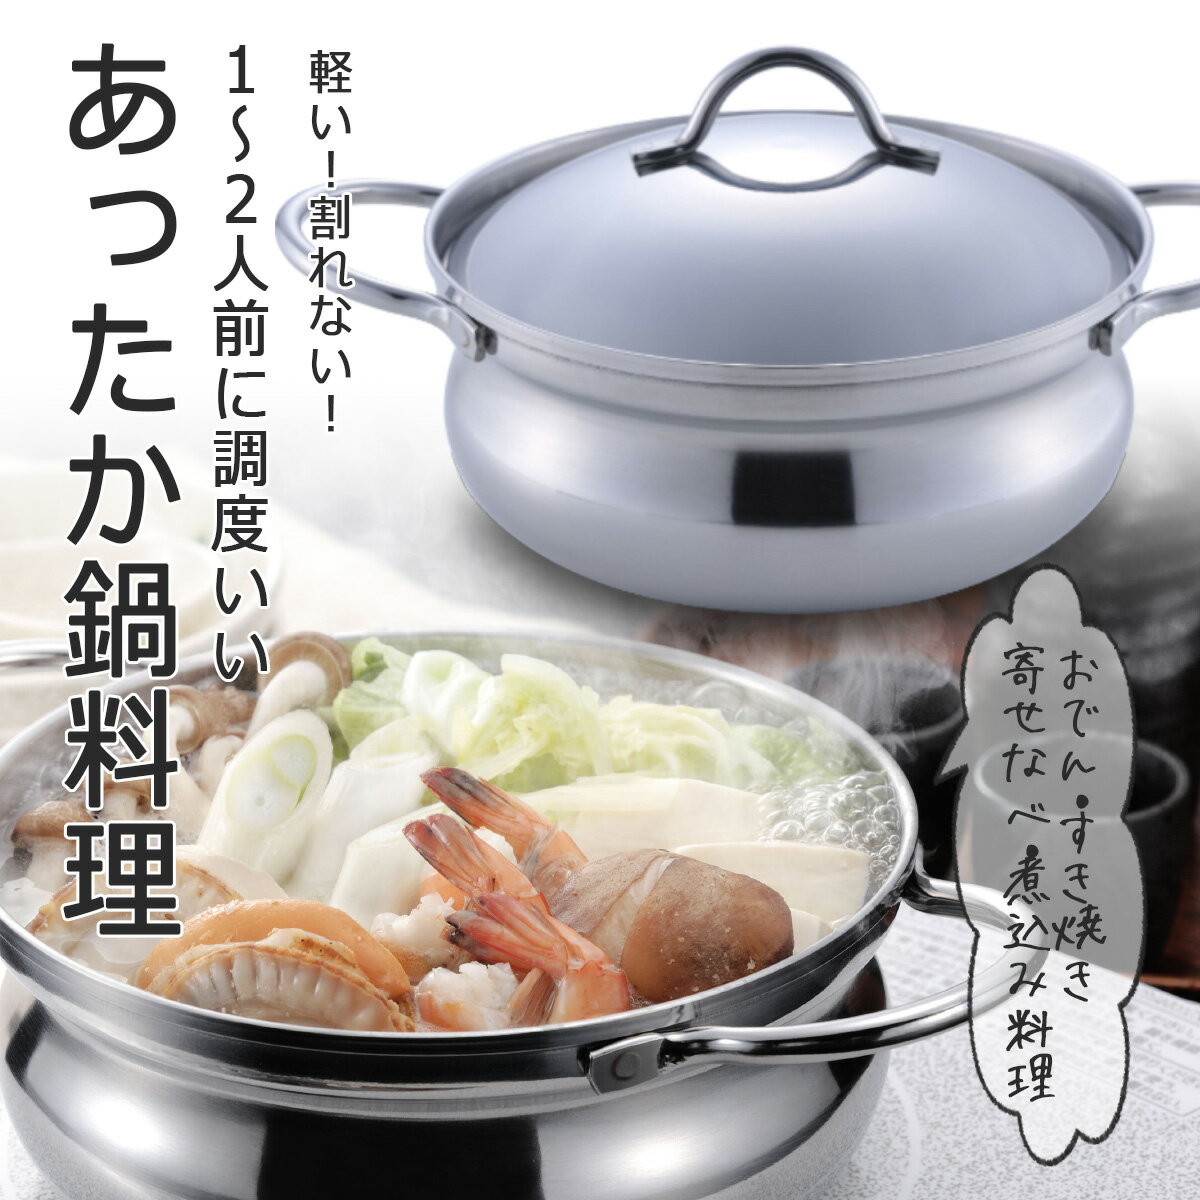 予算5,000円】煮込み料理に最適な耐久性のあるお鍋の人気おすすめ